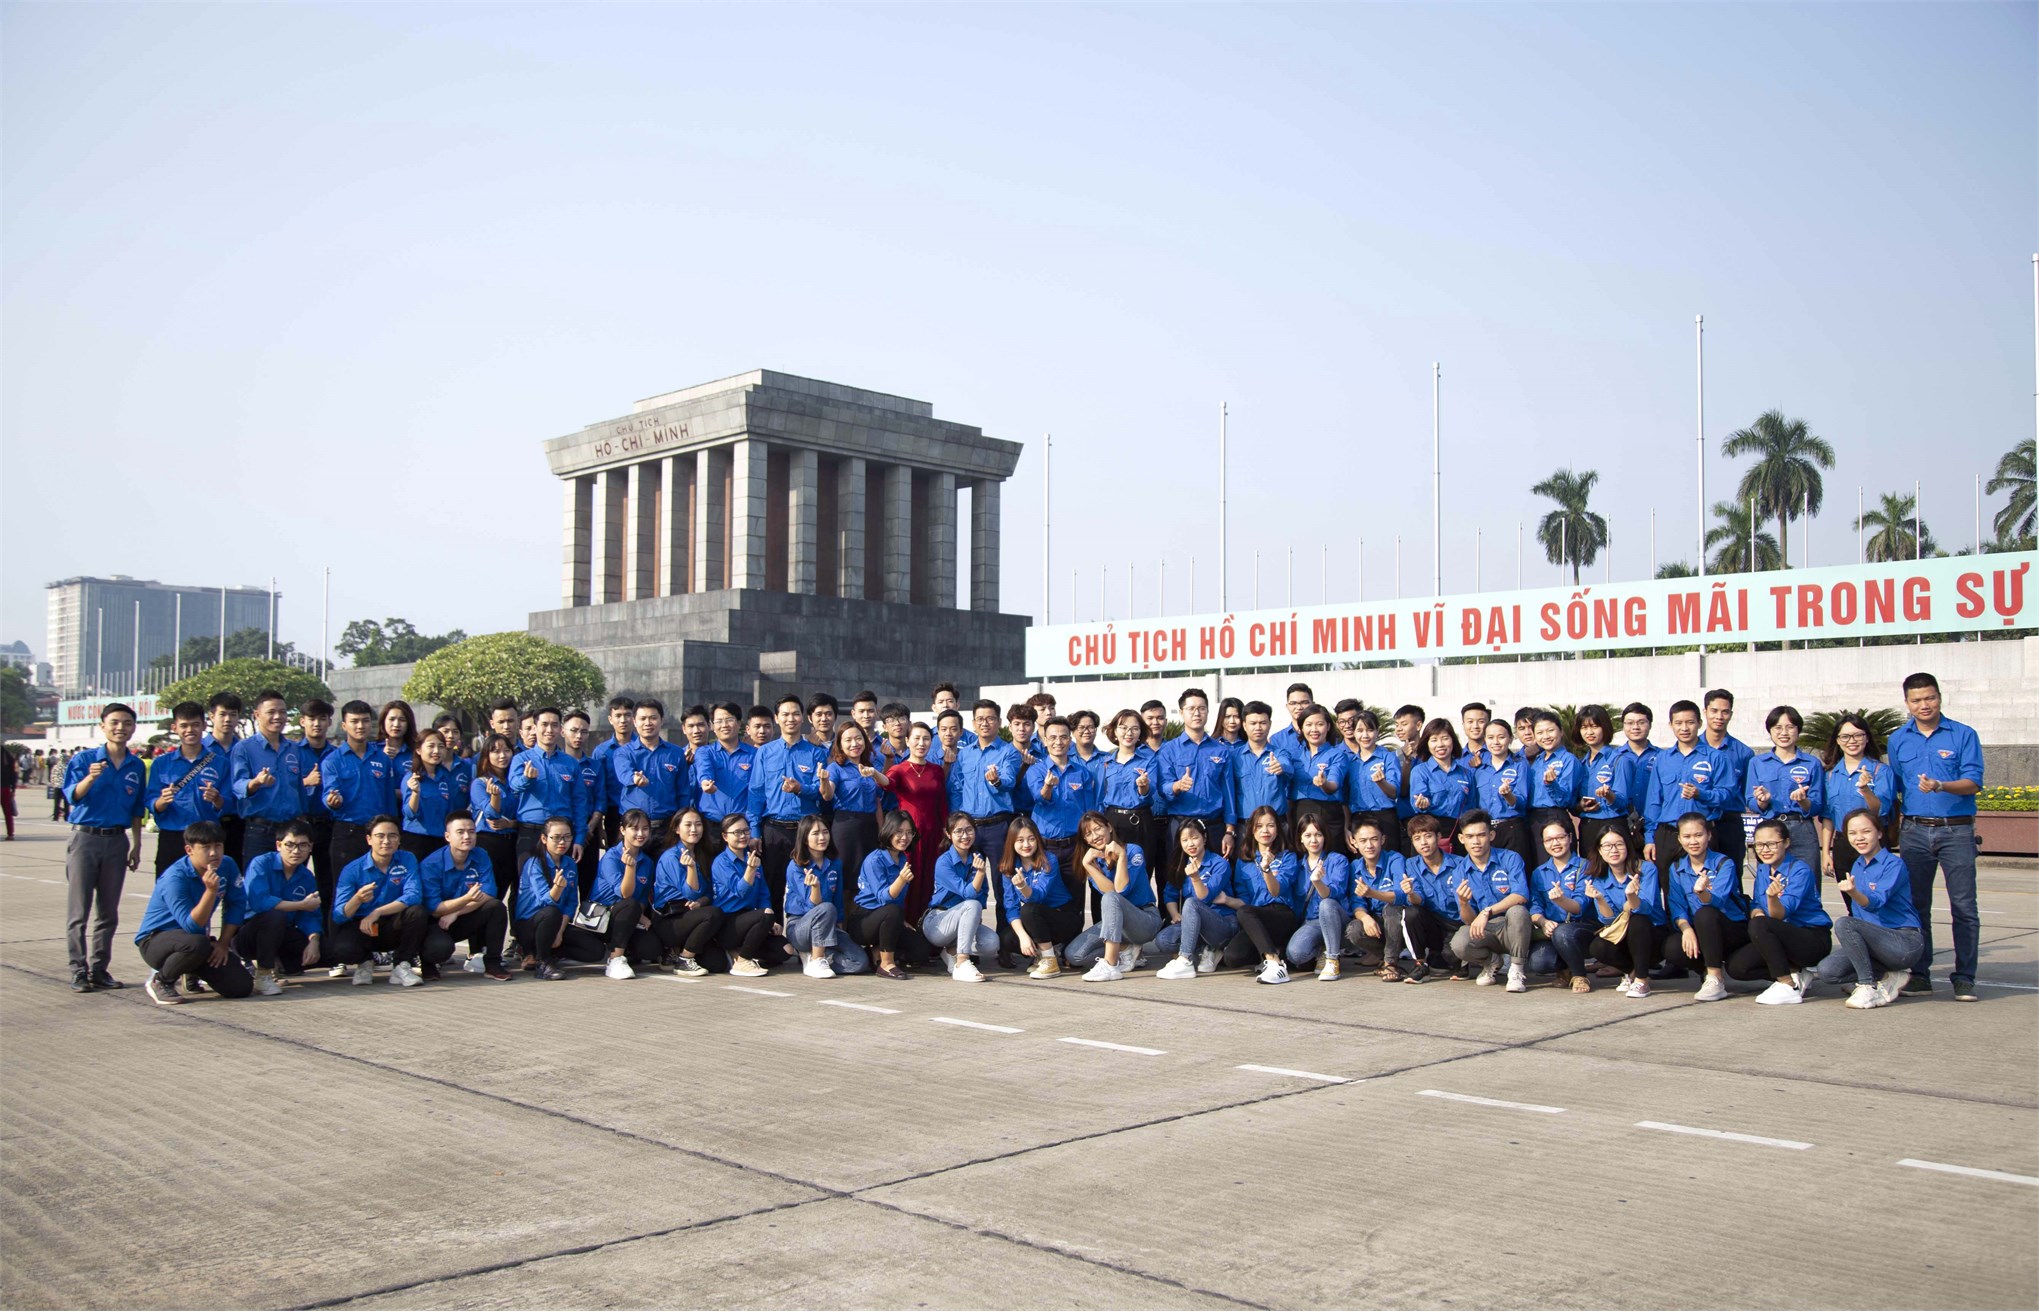 Liên chi đoàn TT Việt Nhật tham gia chương trình Lễ báo công do Đoàn thanh niên - Hội sinh viên tổ chức